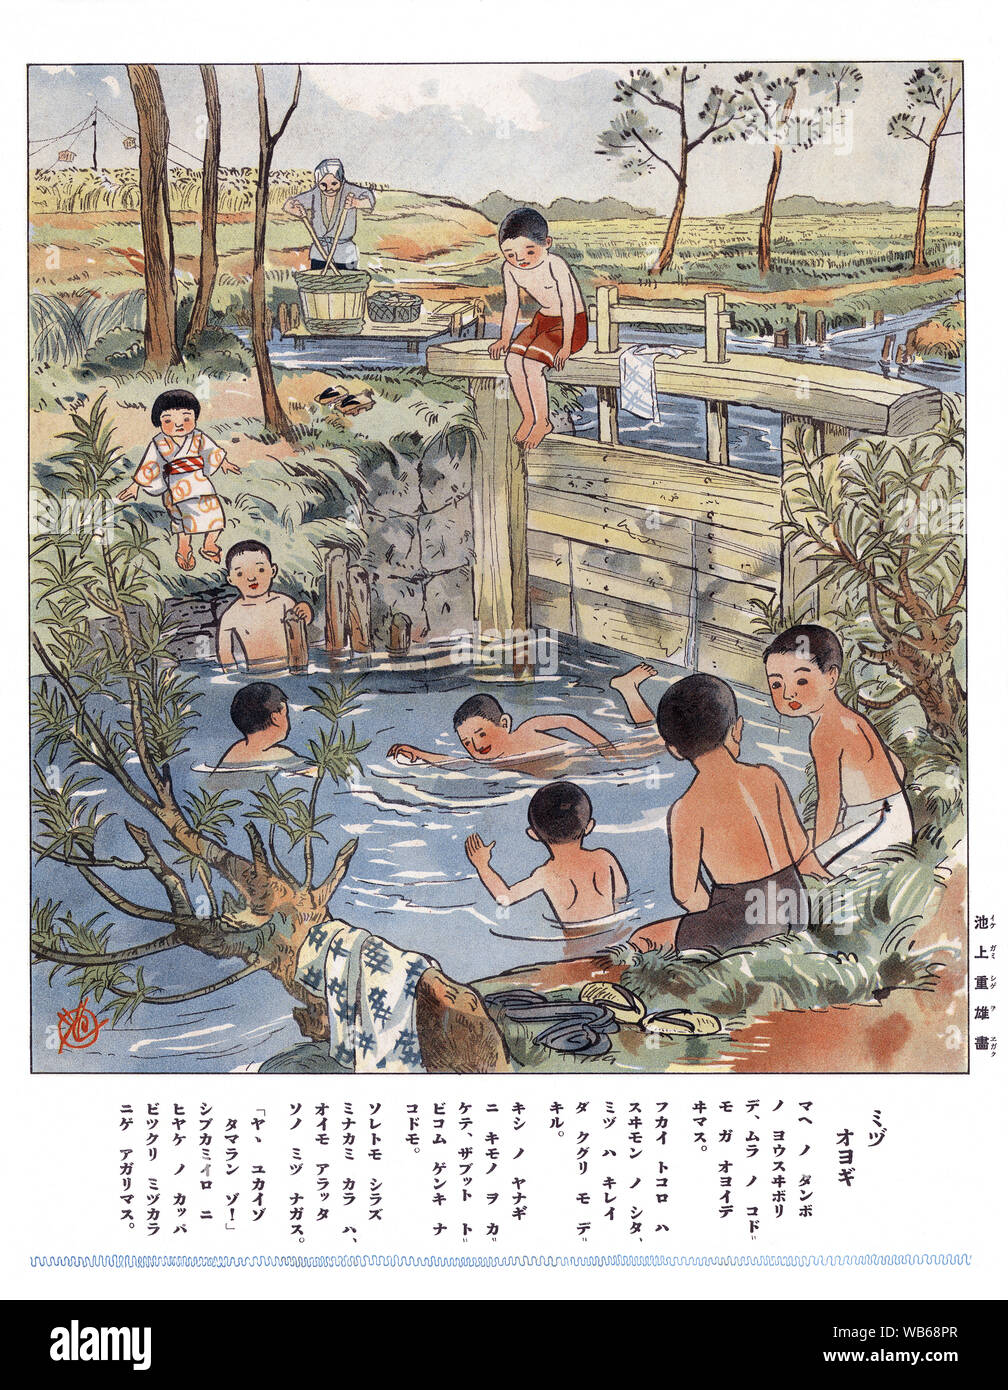 [ 1930 - Japon Japonais Illustration d'enfants jouant dans la rivière ] - une impression avec verset pour les enfants de l'école élémentaire montrant des enfants jouant dans une rivière à la campagne. 20e siècle vintage illustration de livre. Banque D'Images